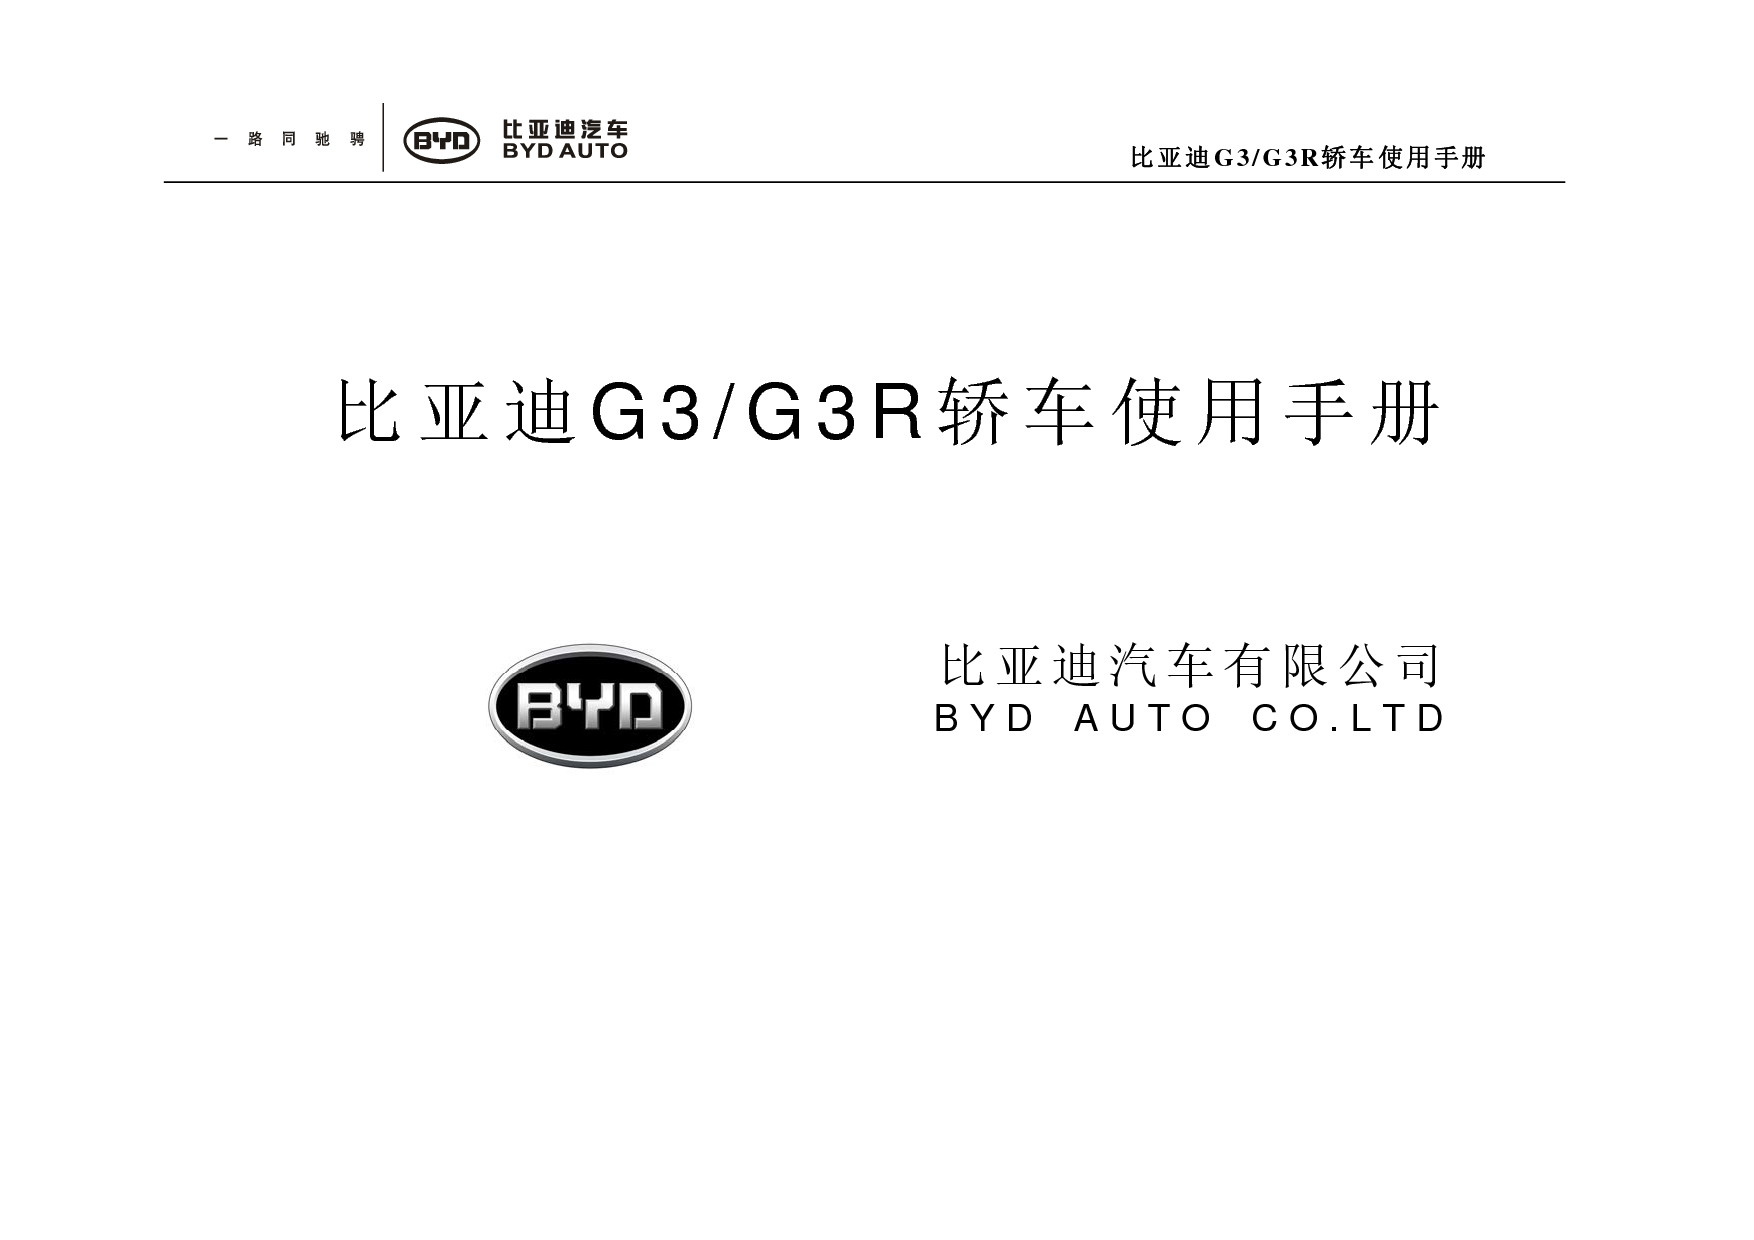 比亚迪 BYD G3 2011 用户手册 封面